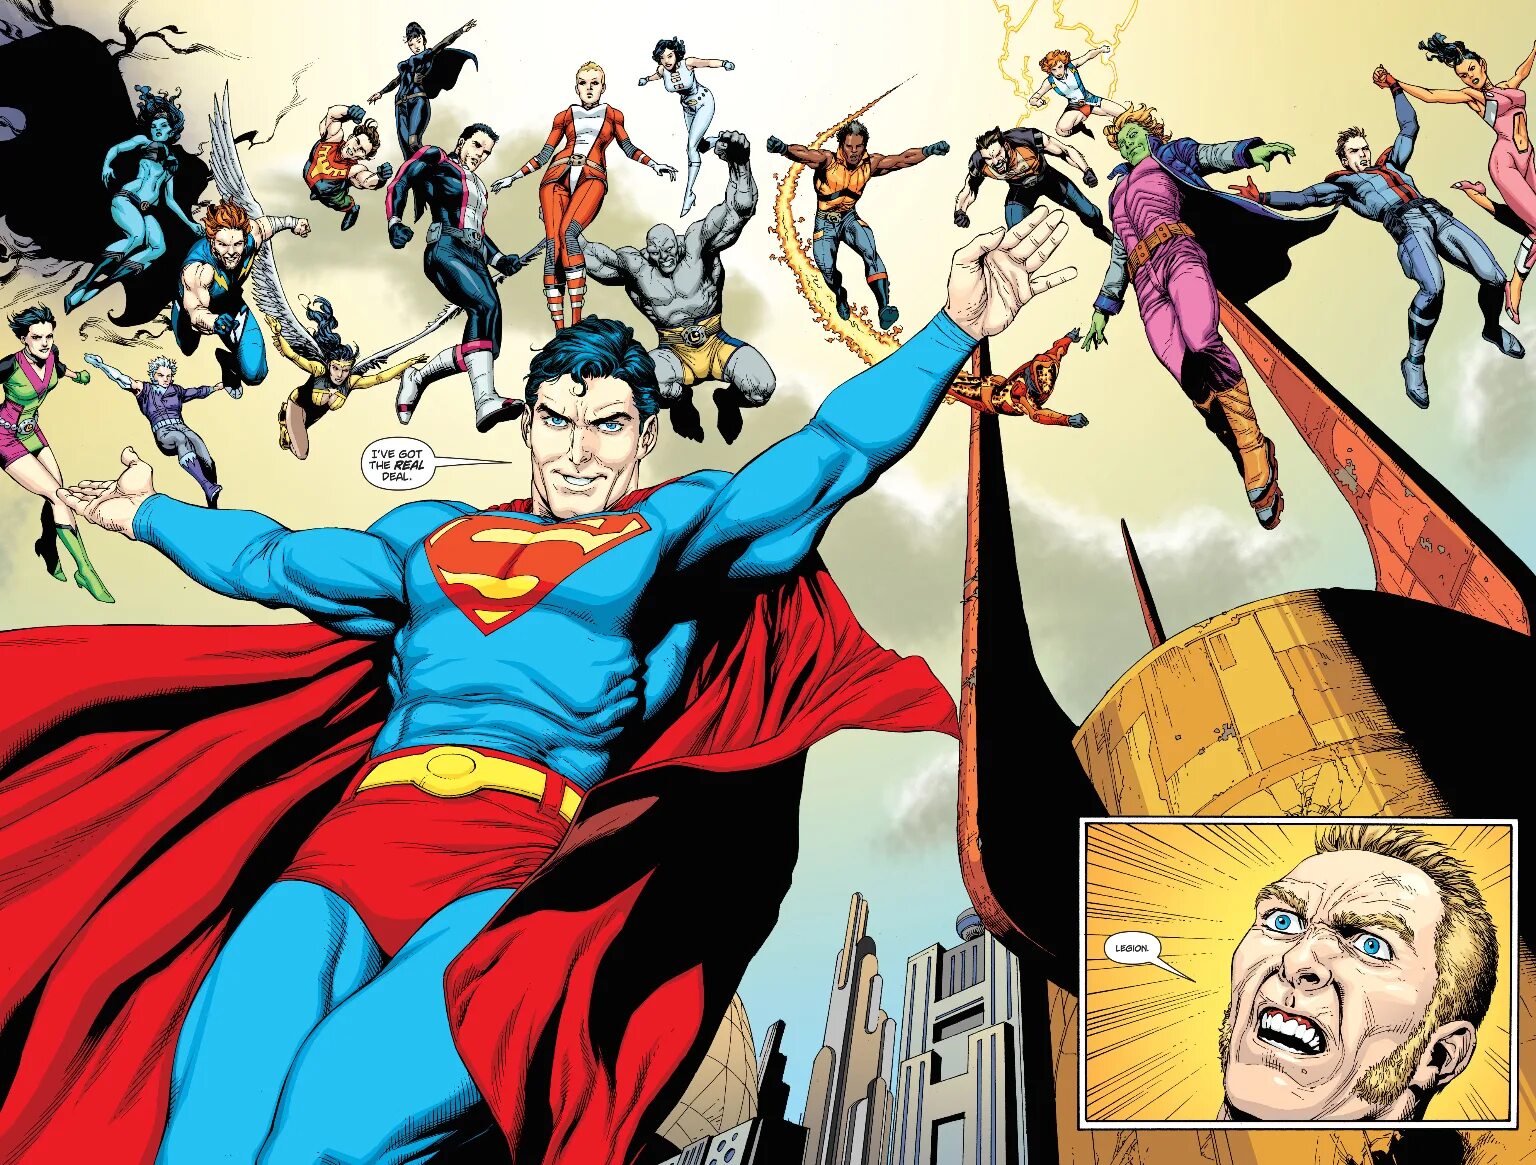 Супермен Legion of Superheroes. Легион супергероев 2008 - Супермен. Комиксы о супергероях. Комиксы про супергероев. Про супергероя по английскому